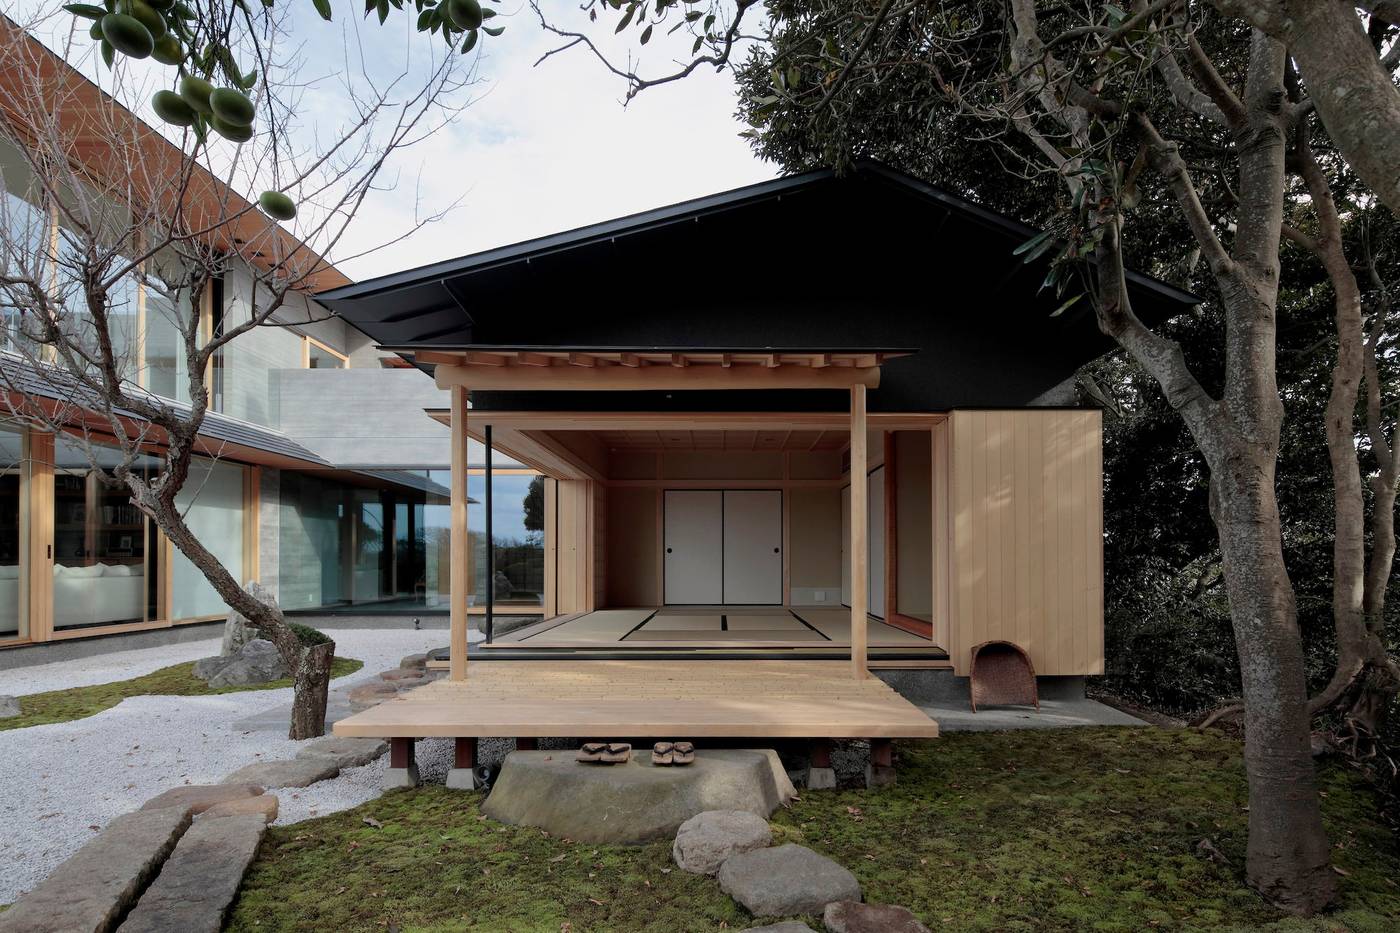 Casas japonesas modernas - fotos y consejos de decoración